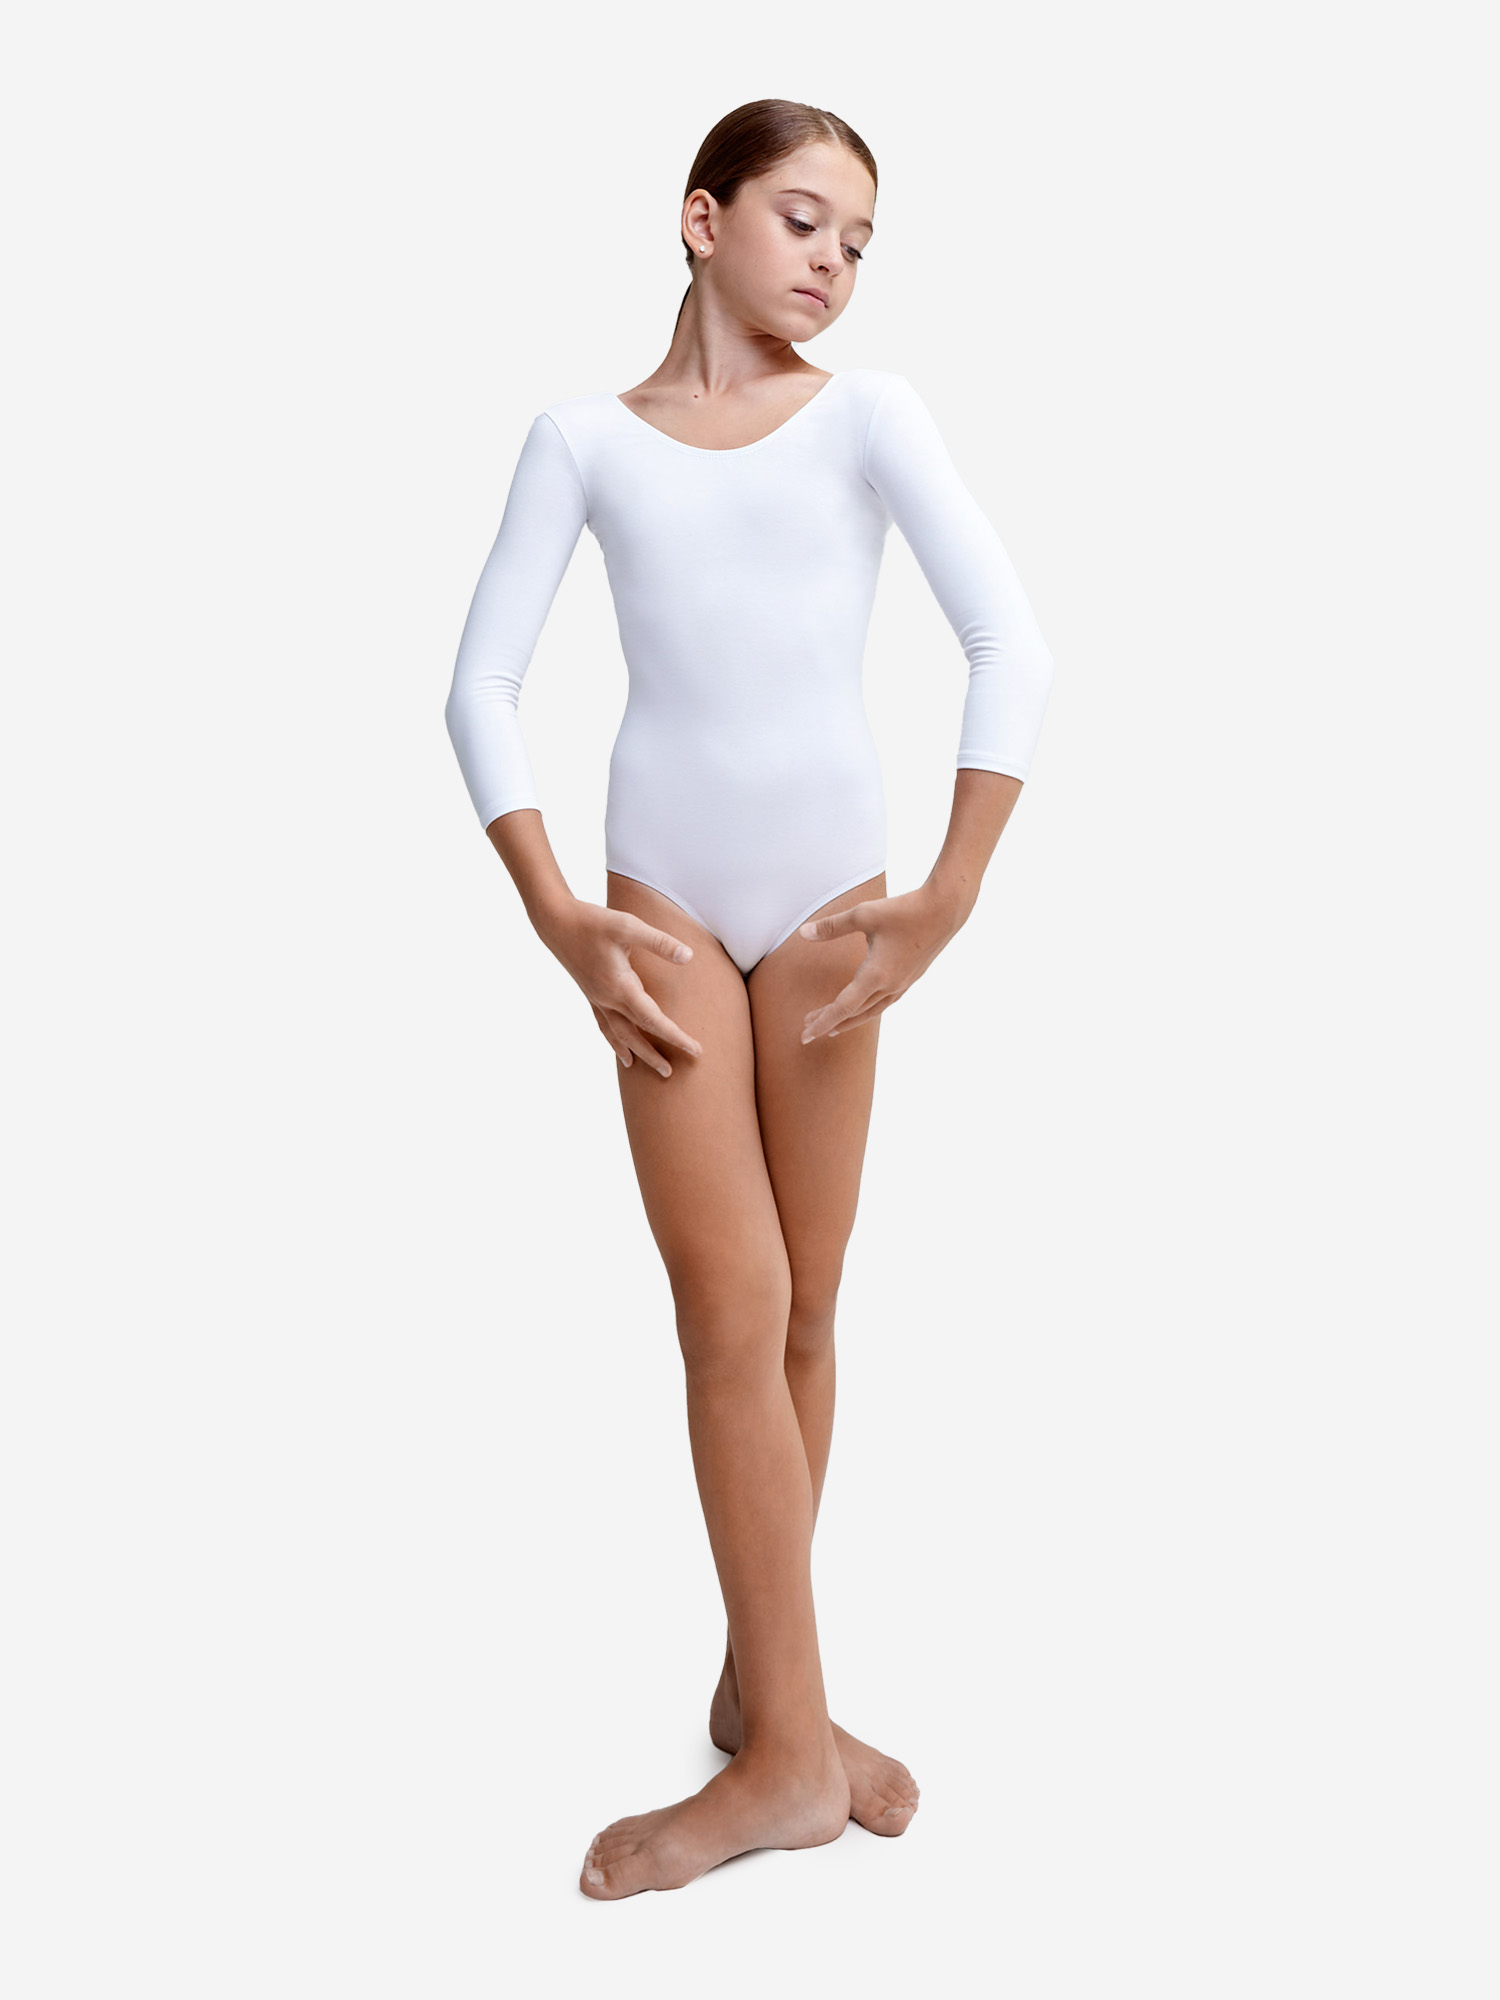 Купальник гимнастический Belkina без юбки для танцев и тренировок, Белый купальник гимнастический belkina без юбки для танцев и тренировок голубой